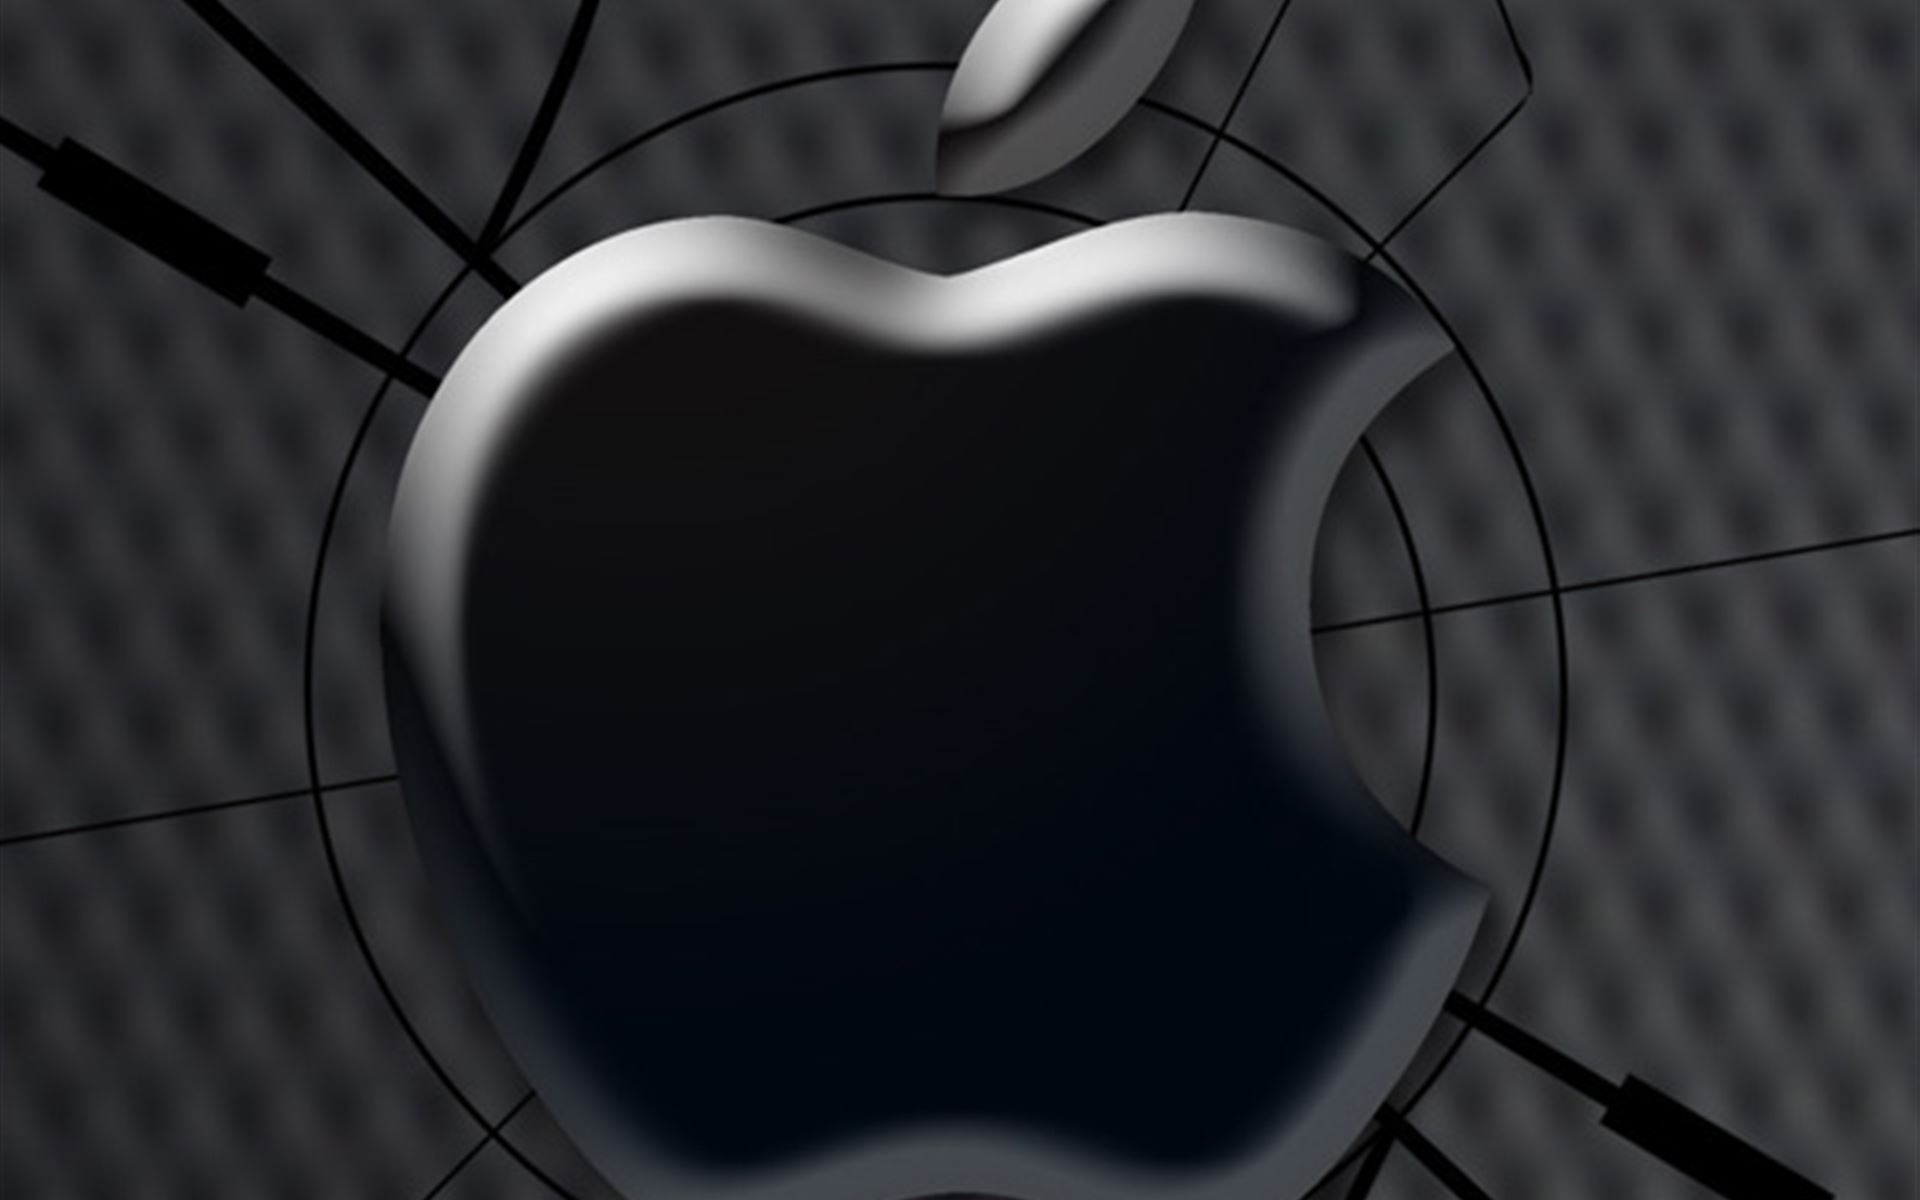 Broken glass apple logo computer iPhone 4s Wallpapers Free Download